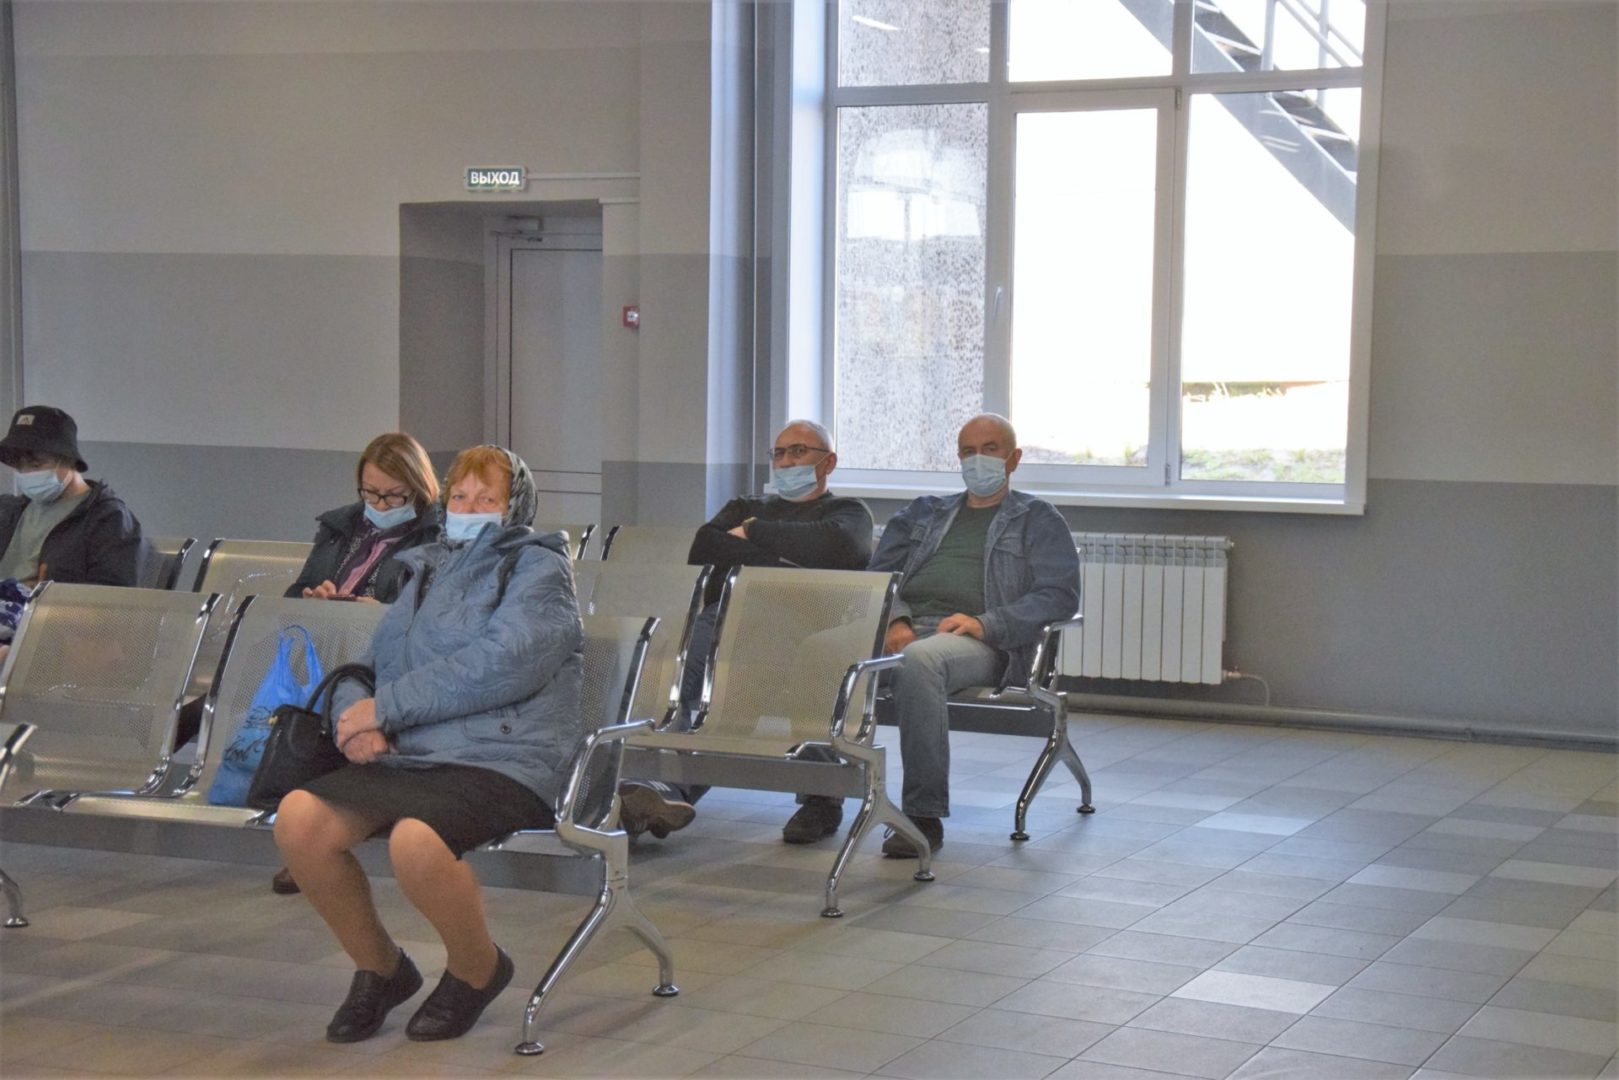 Зал ожидания обновили в здании автовокзала Братска